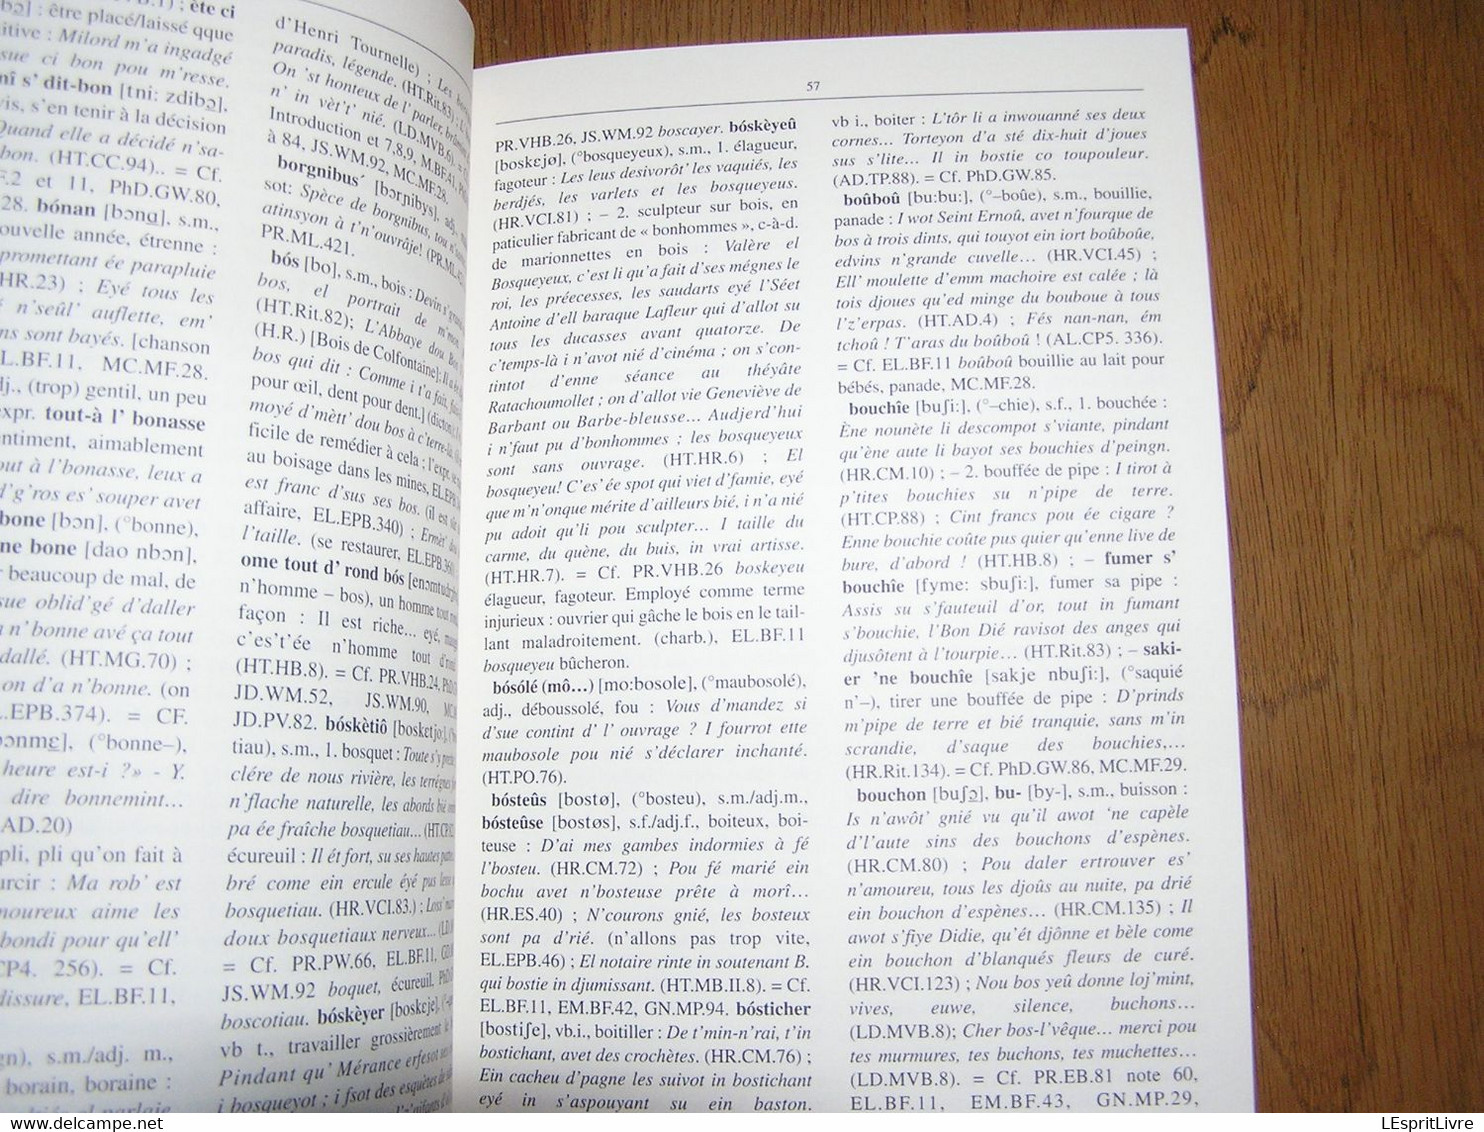 ESSAI D'ILLUSTRATION DU PARLER BORAIN Dictionnaire Capron Nisolle Régionalisme Hainaut Borinage Patois Dialecte Wallon